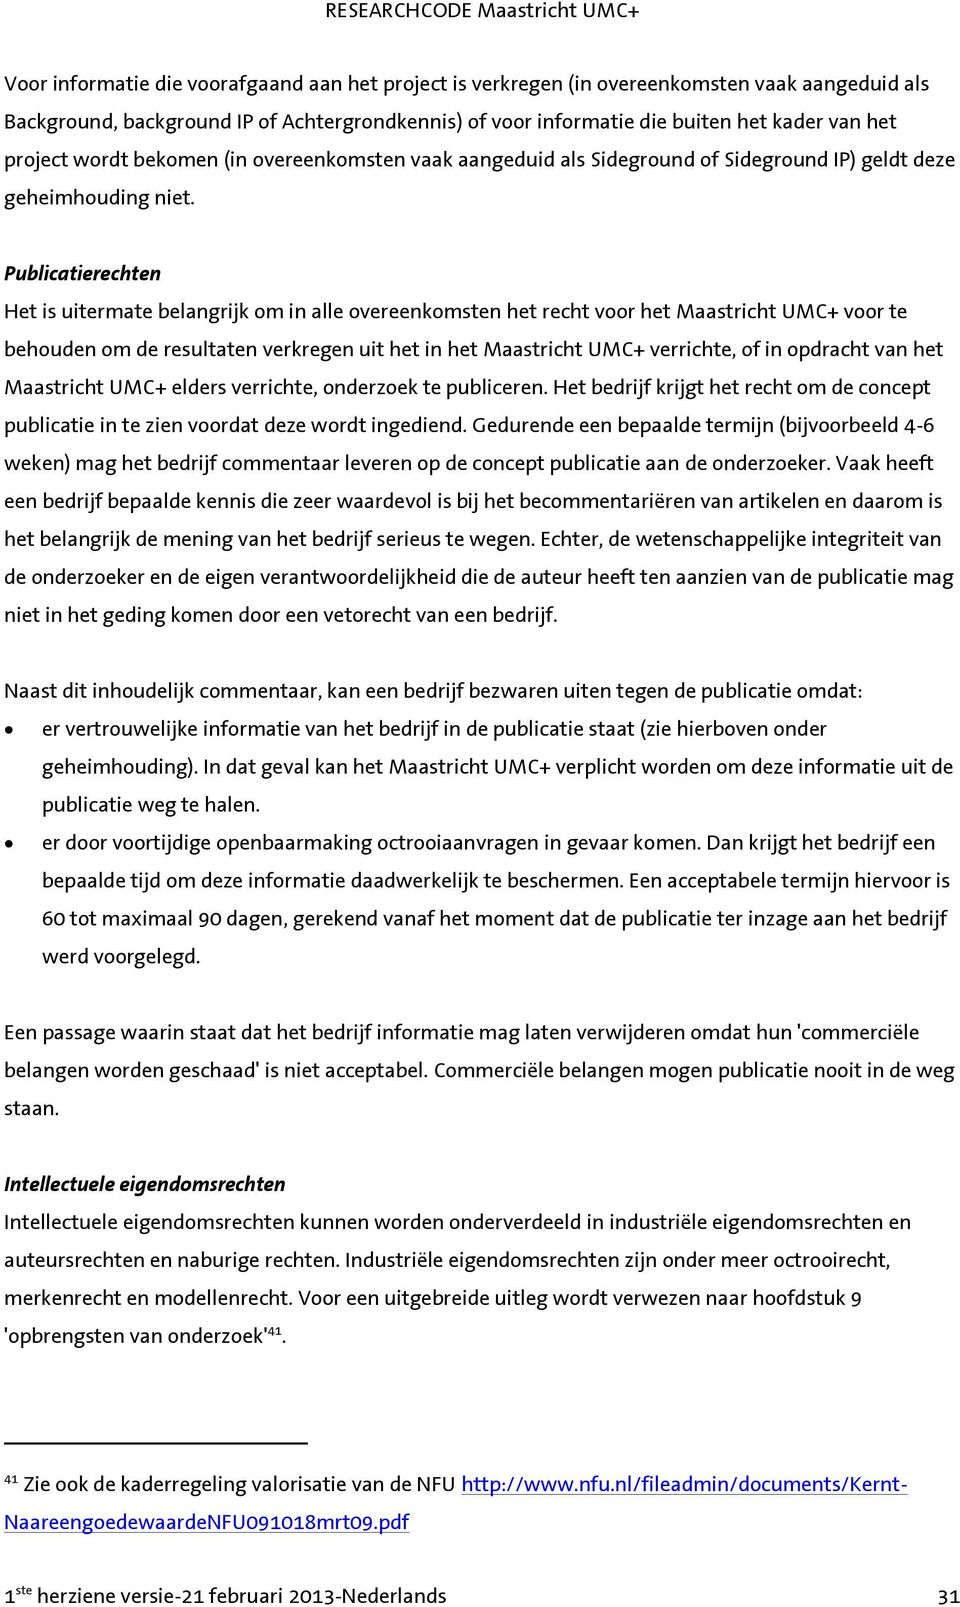 Publicatierechten Het is uitermate belangrijk om in alle overeenkomsten het recht voor het Maastricht UMC+ voor te behouden om de resultaten verkregen uit het in het Maastricht UMC+ verrichte, of in